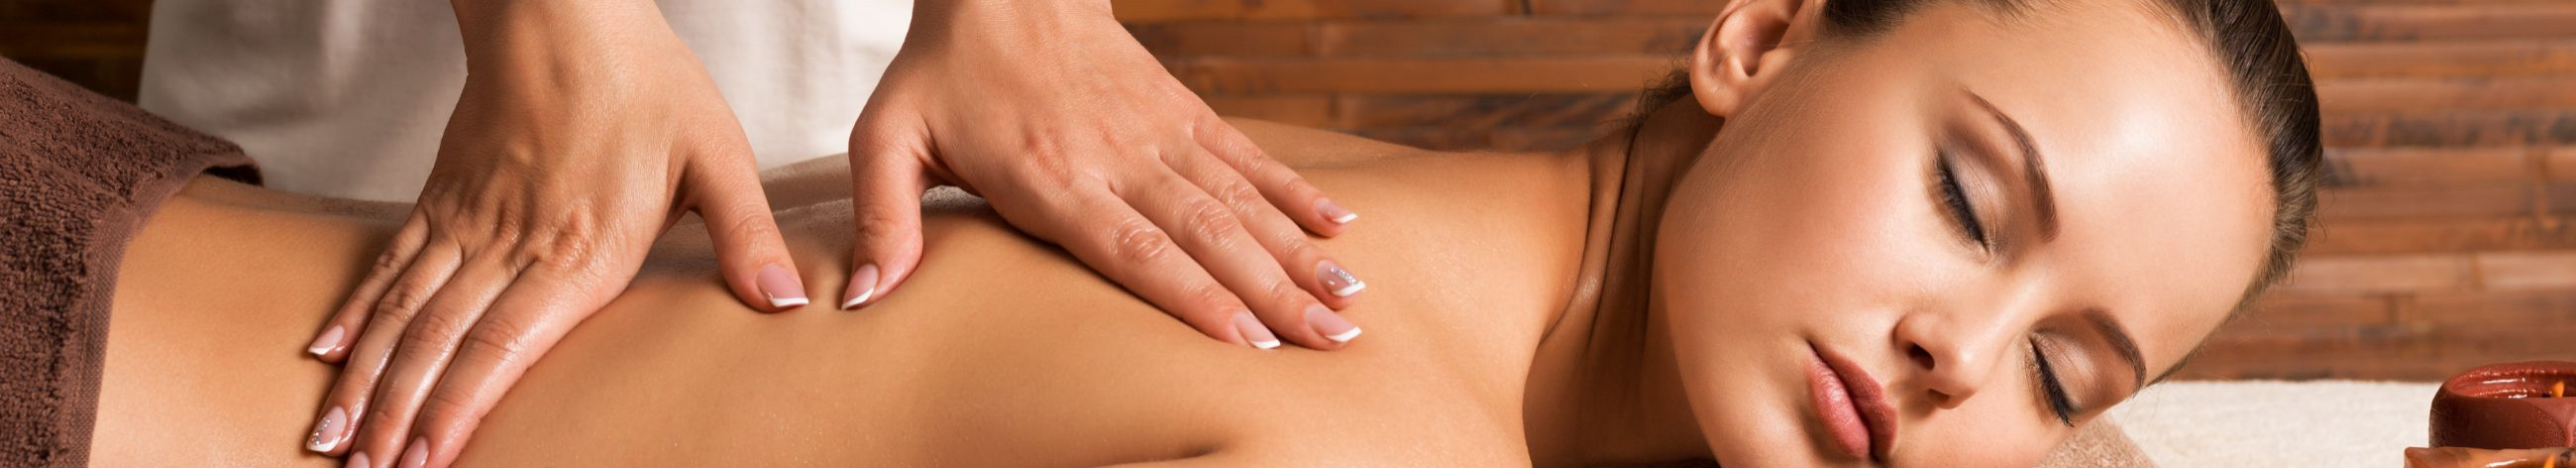 classic massage, sports massage, thai massage, kinesio taping, dry acupuncture, massage, Masseurs, massage therapy